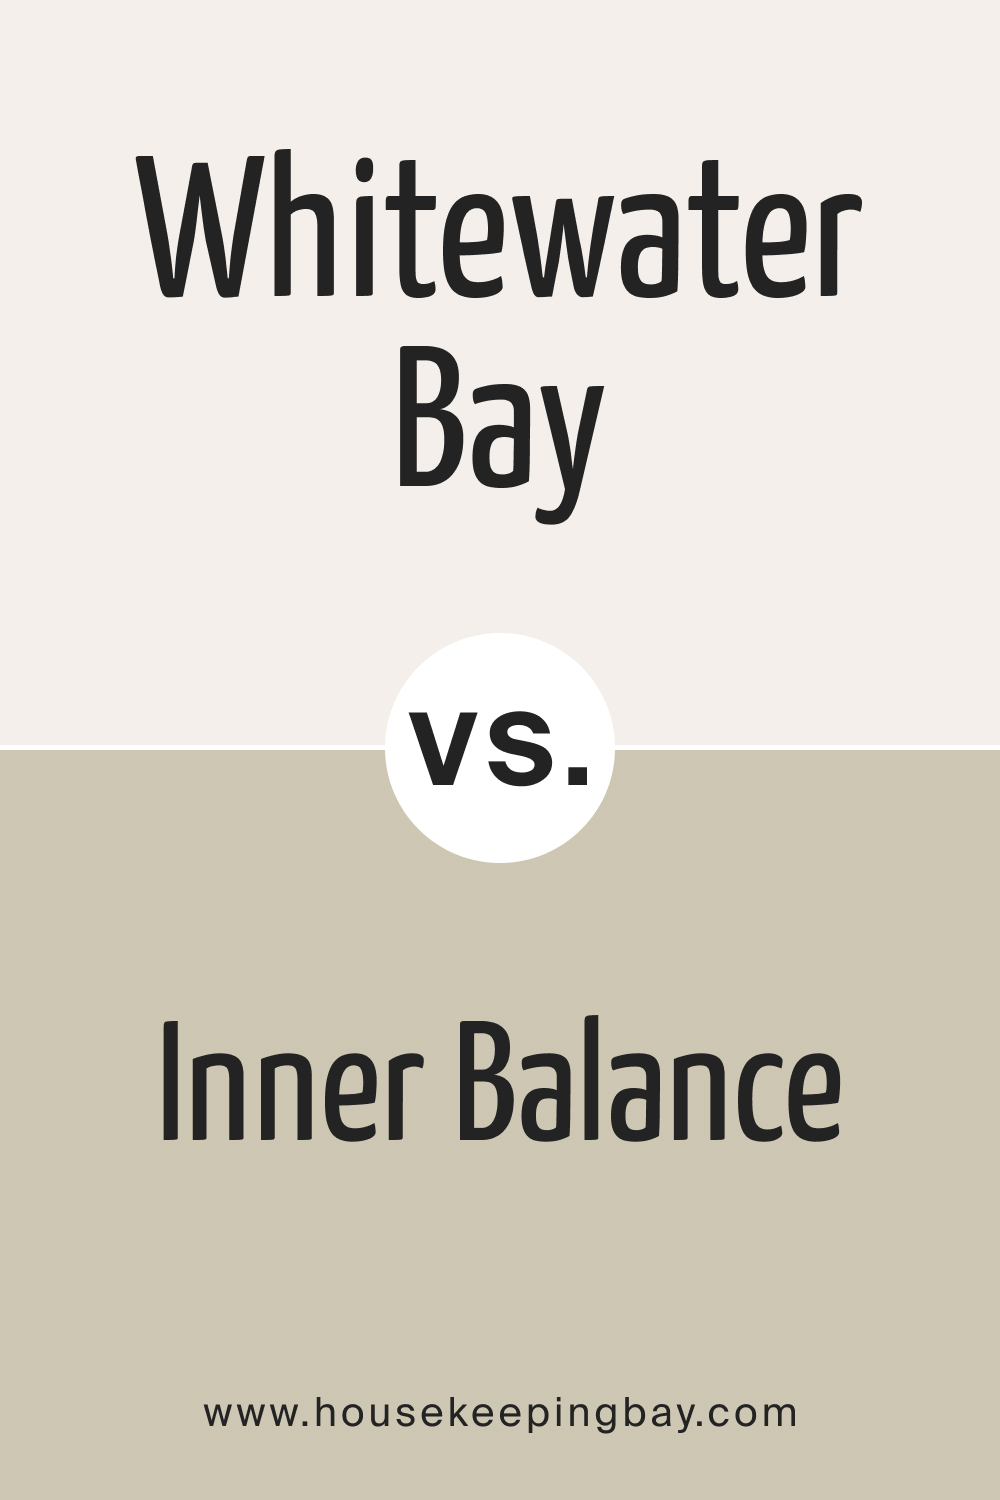 Whitewater Bay OC 70 vs BM 1522 Inner Balance